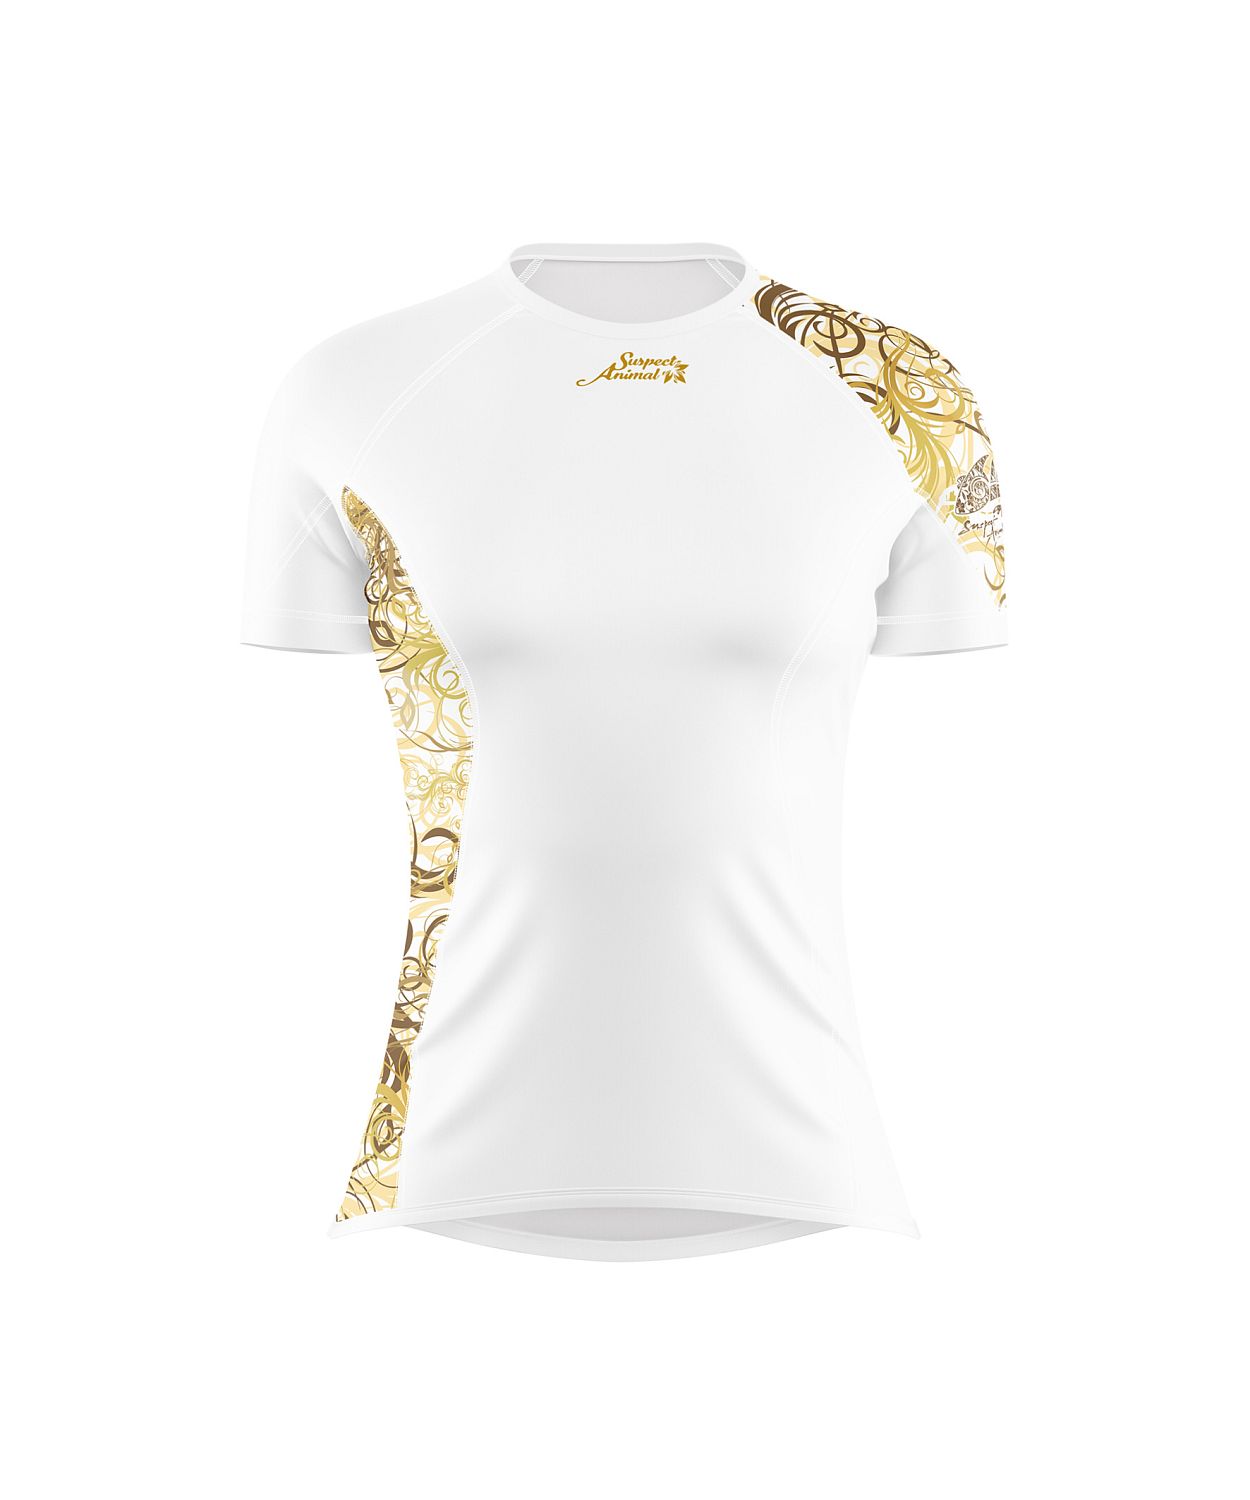 VÝPRODEJ - Dámské funkční triko krátký rukáv GOLD bílá Bamboo Ultra, XL